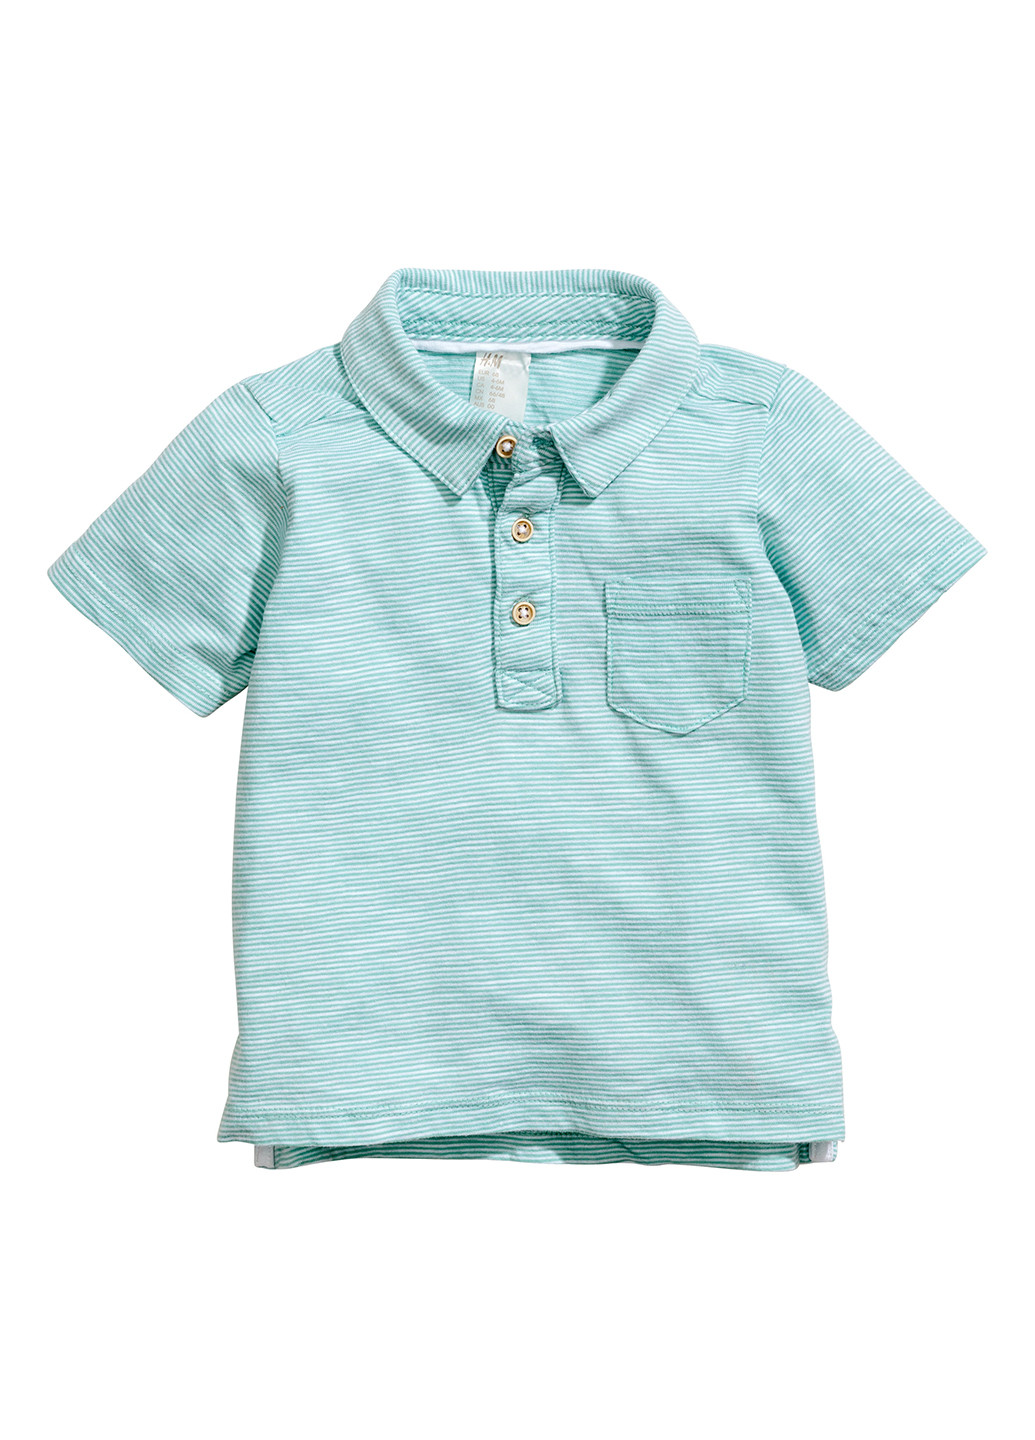 Голубой детская футболка-поло для мальчика H&M в полоску